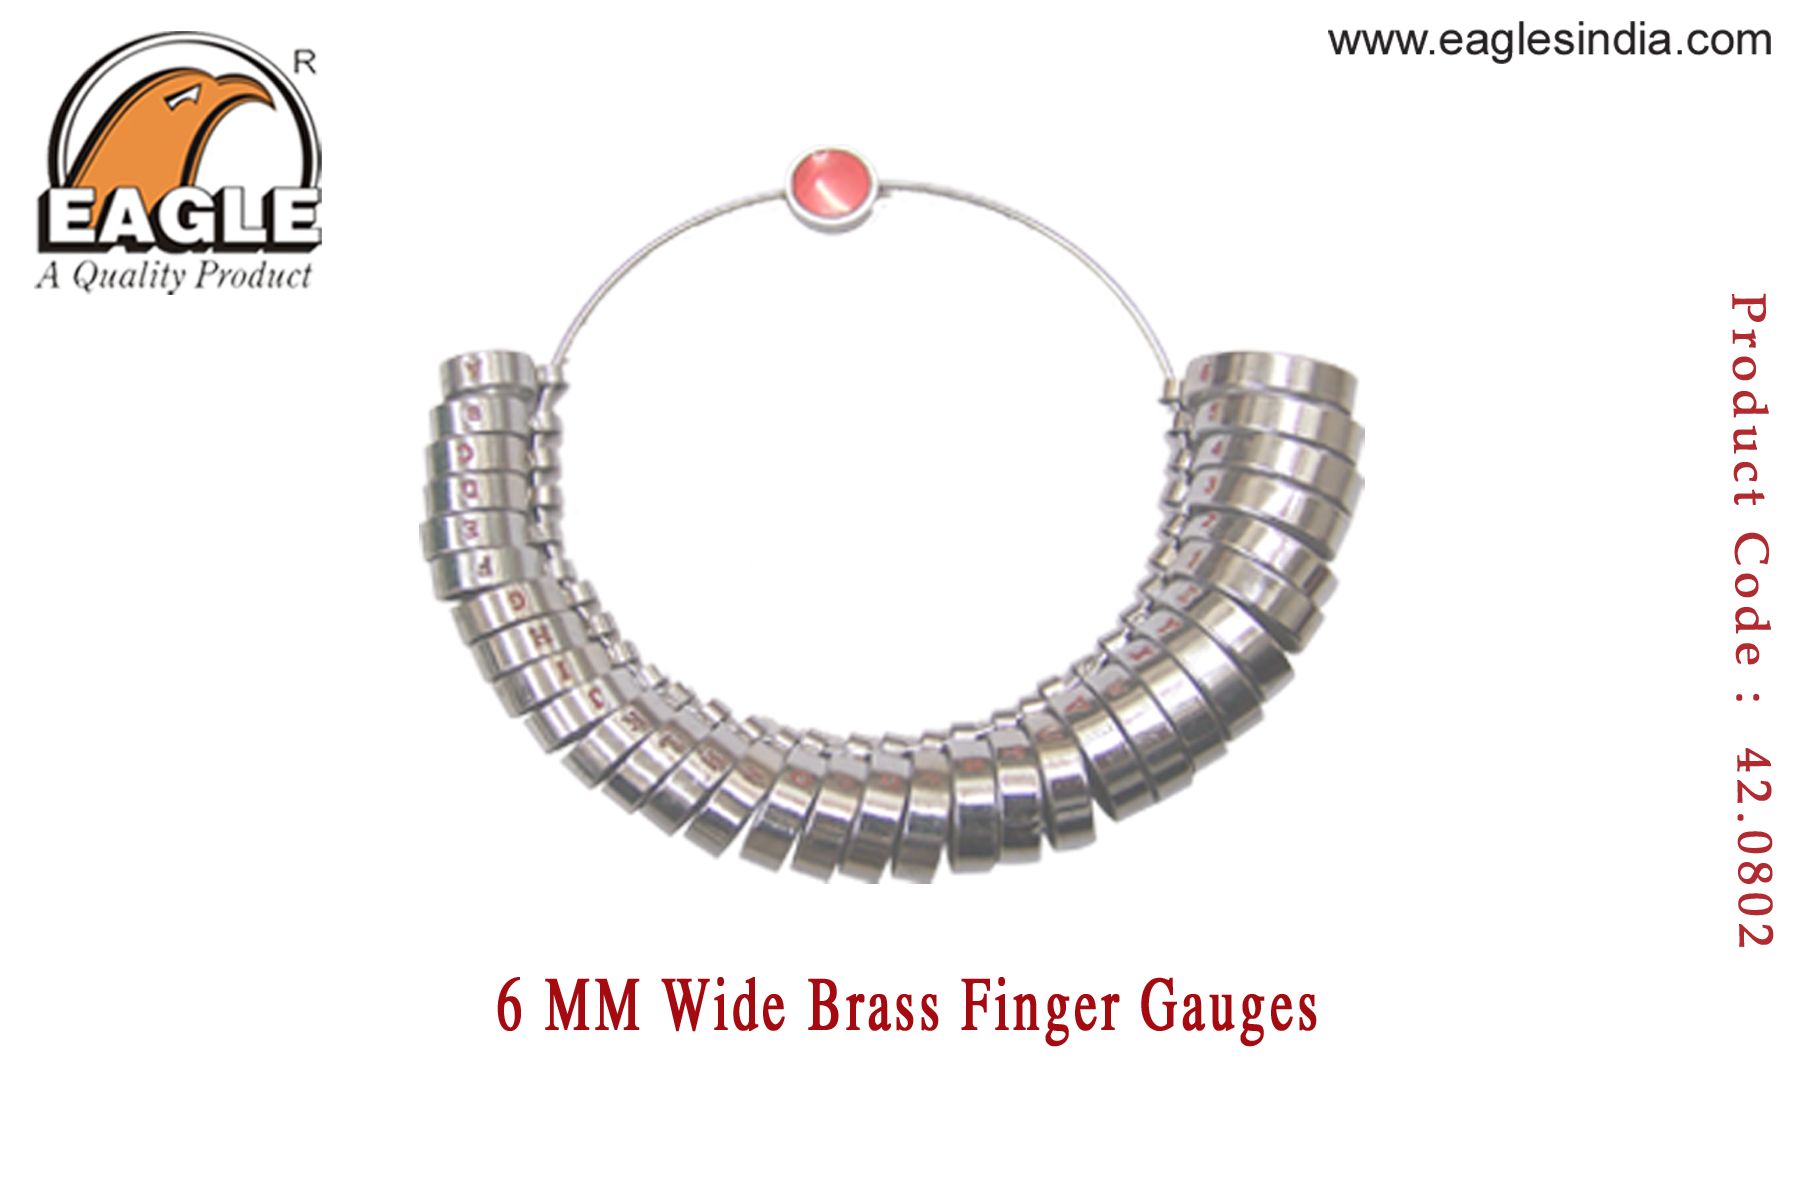 6 MM Wide Brass Finger Gauges